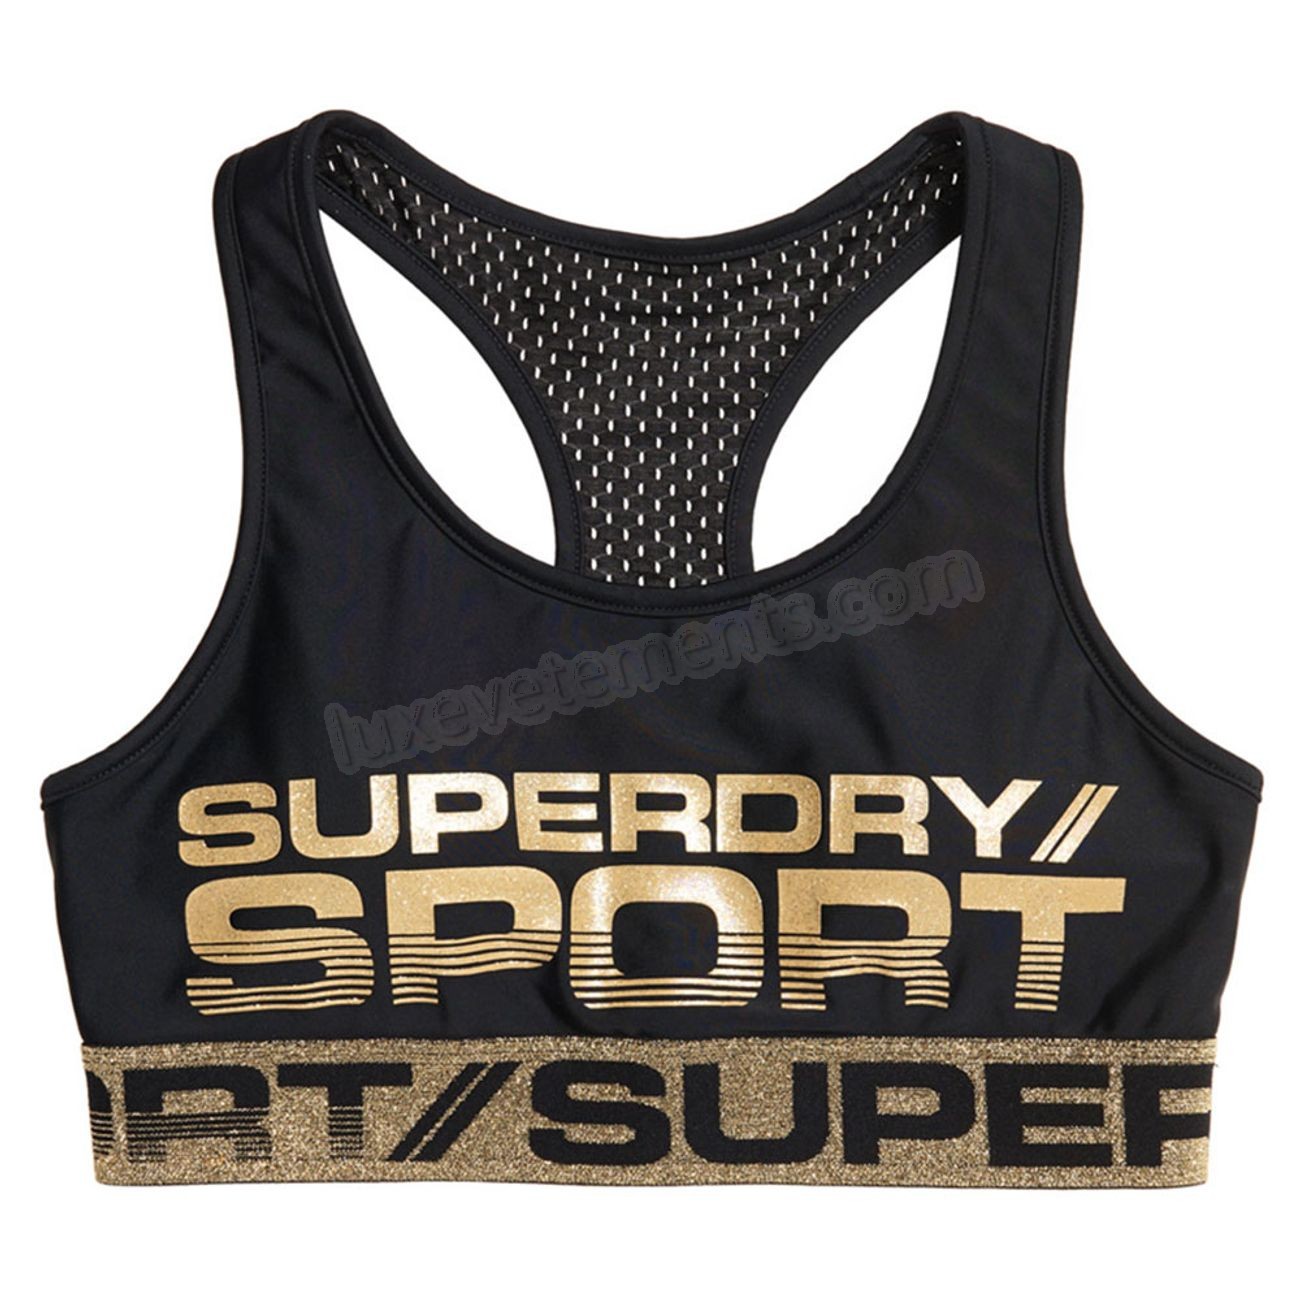 Superdry-running femme SUPERDRY SUPERDRY Bolt Sport Brassière Femme Vente en ligne - Superdry-running femme SUPERDRY SUPERDRY Bolt Sport Brassière Femme Vente en ligne